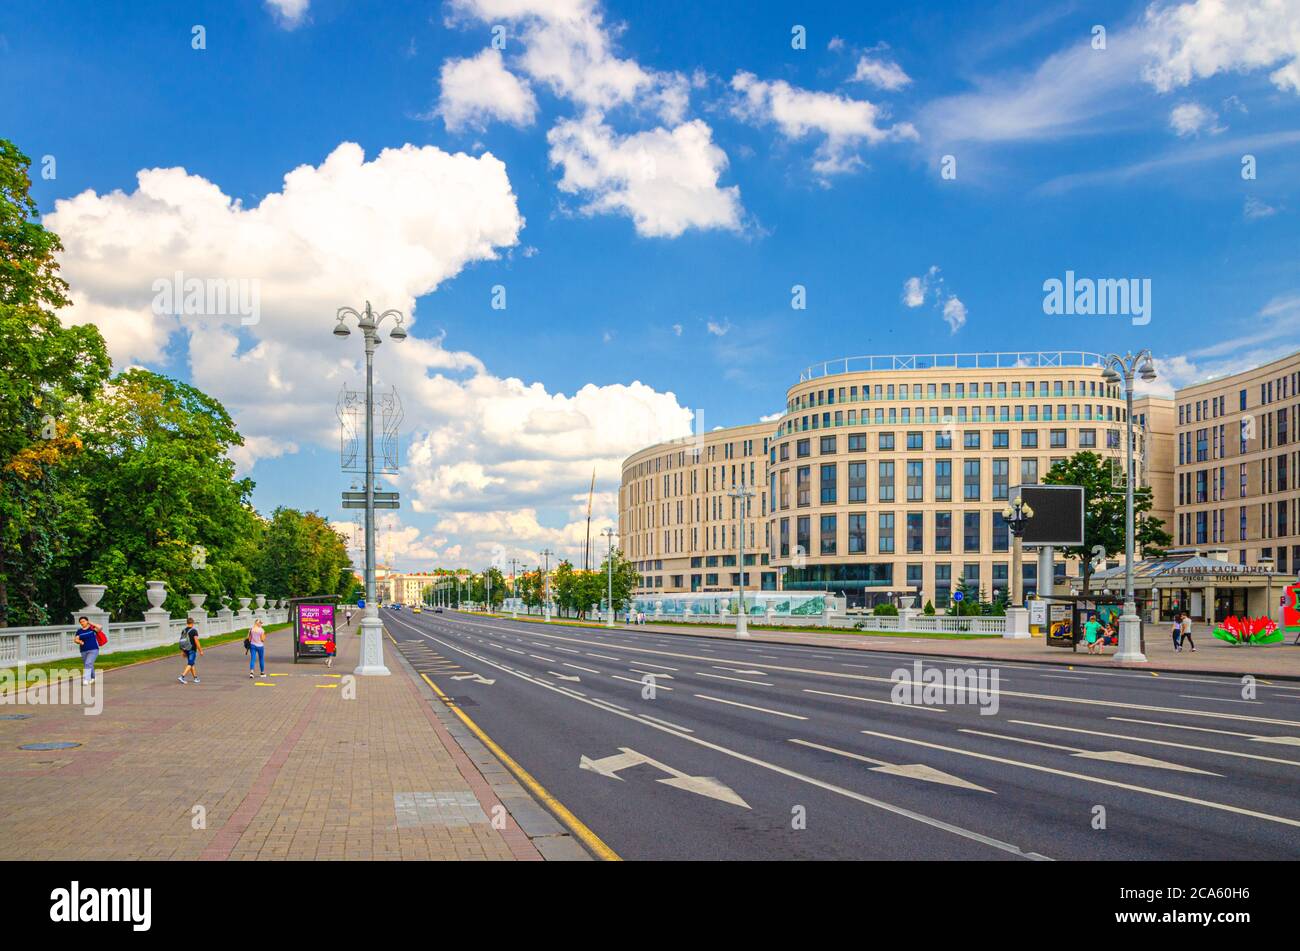 Minsk, Bielorussia, 26 luglio 2020: Independence Avenue con il classicismo socialista edifici in stile Stalin Empire, marciapiede e incompiuto Kempinski hotel, blu cielo bianco nuvole in sole giorno d'estate Foto Stock